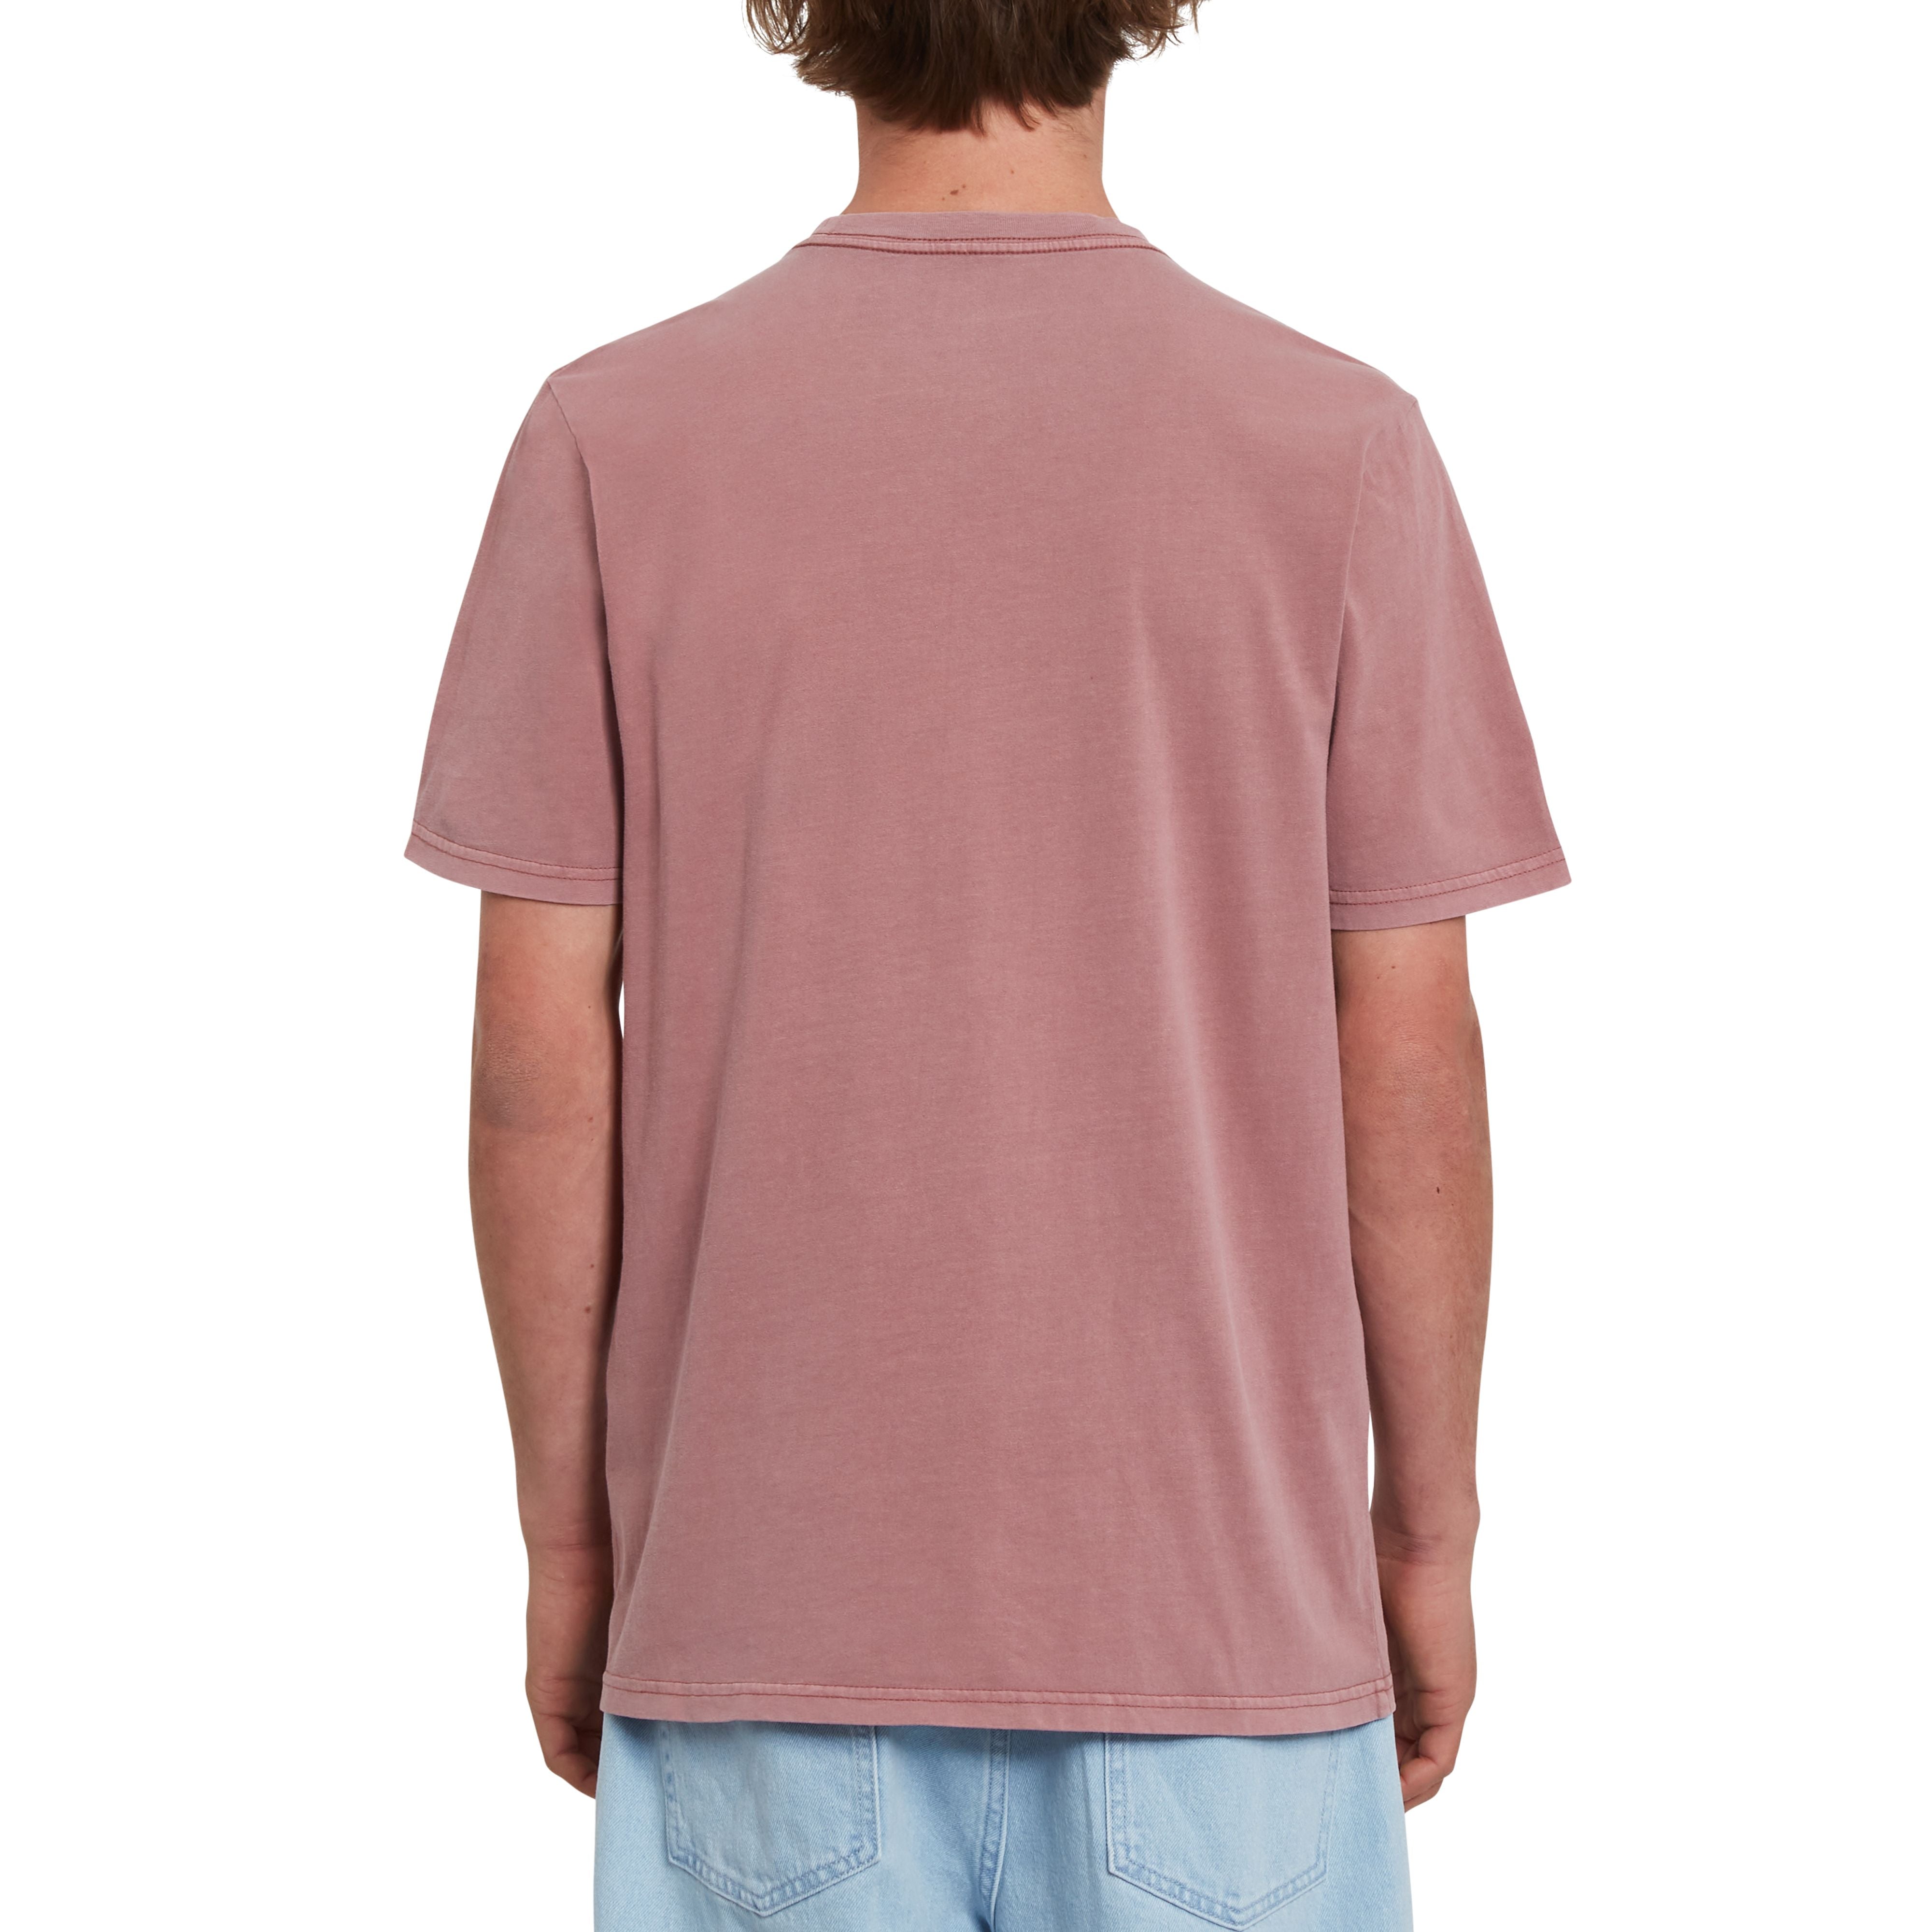 Volcom T-Shirt Solid Stone mit kleiner Volcom Stickerei im Brustbereich in Rose Brown.